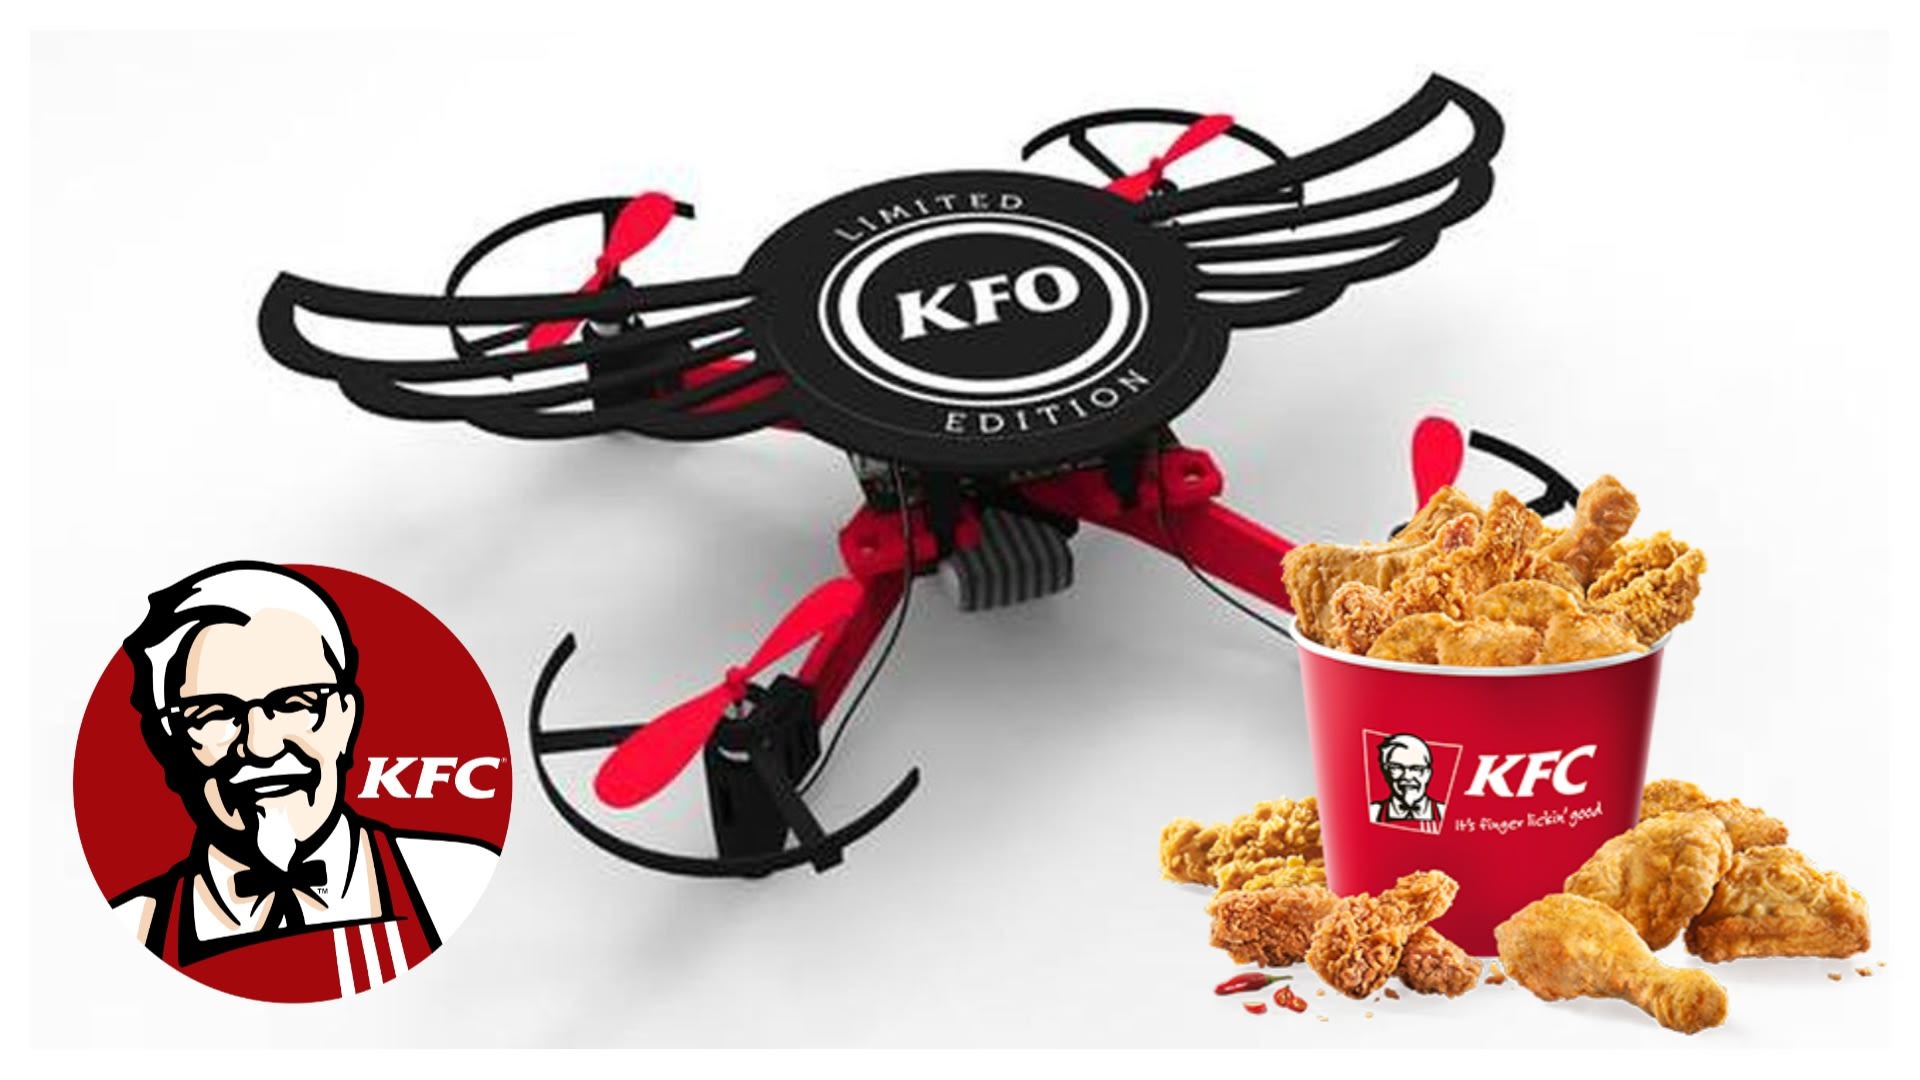 KFC vám dá v Indii ke kuřecím křídlům dron s názvem KFO